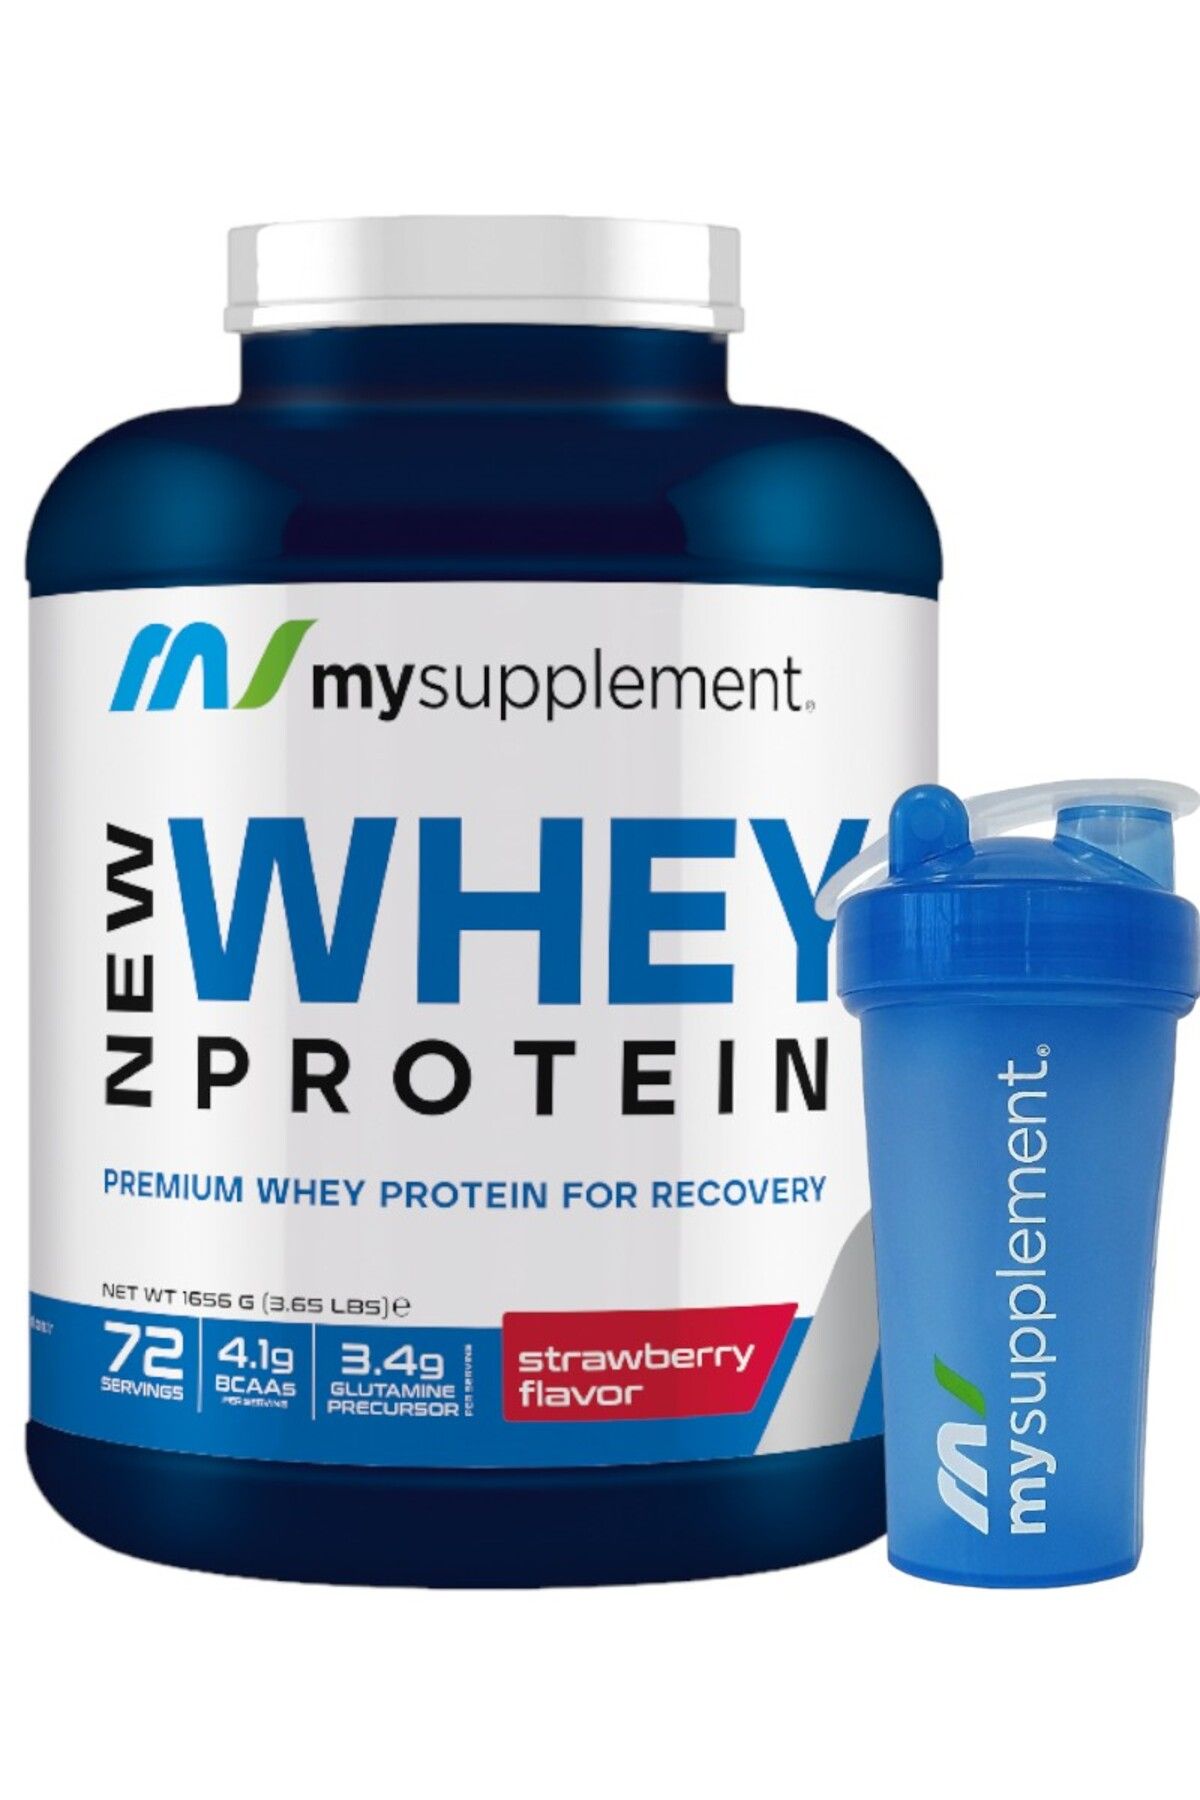 Mysupplement New Whey Protein Çilek 72 Servis 1656gr Protein Tozu %78 Protein Shaker 600 ml